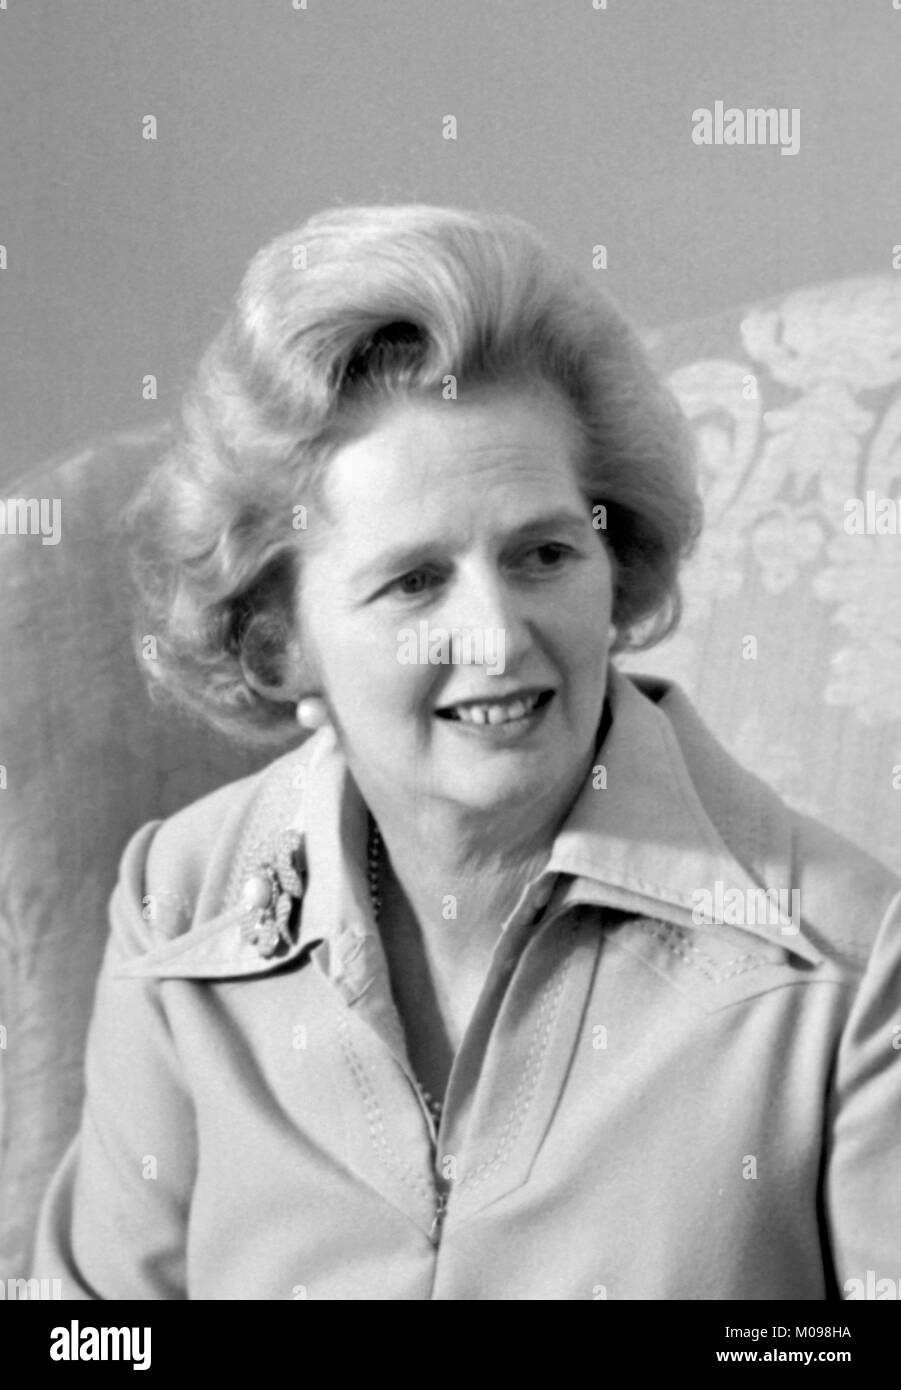 Margaret Thatcher (1925-2013). Portrait des britischen Premierministers im September 1975, Foto von Marion S Trikosko. Stockfoto